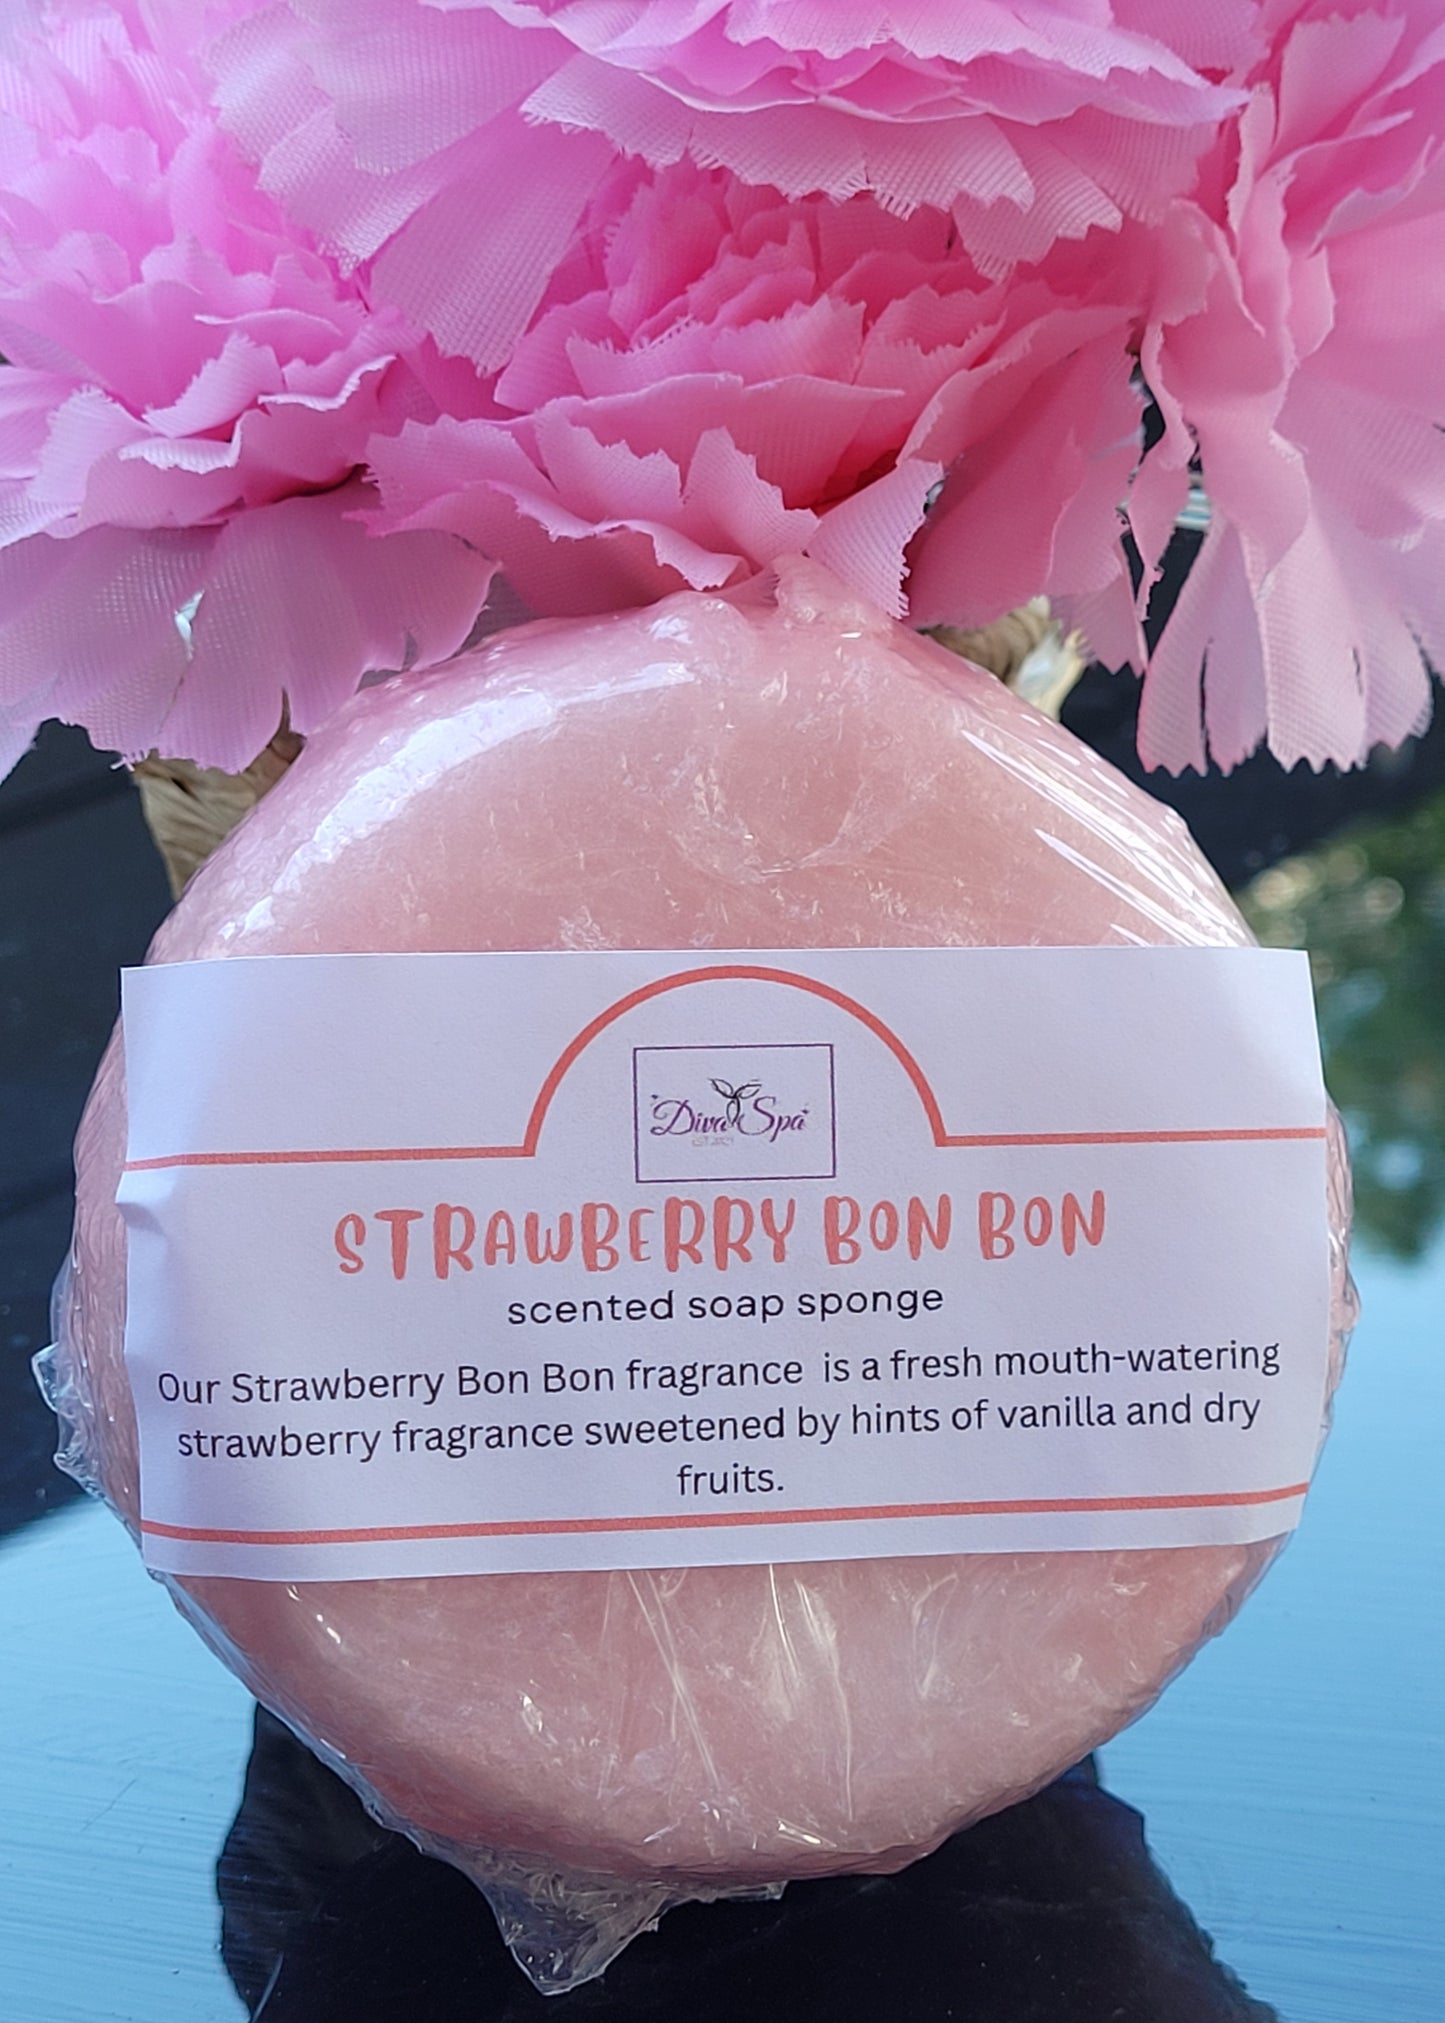 Strawberry Bon bon soap sponge